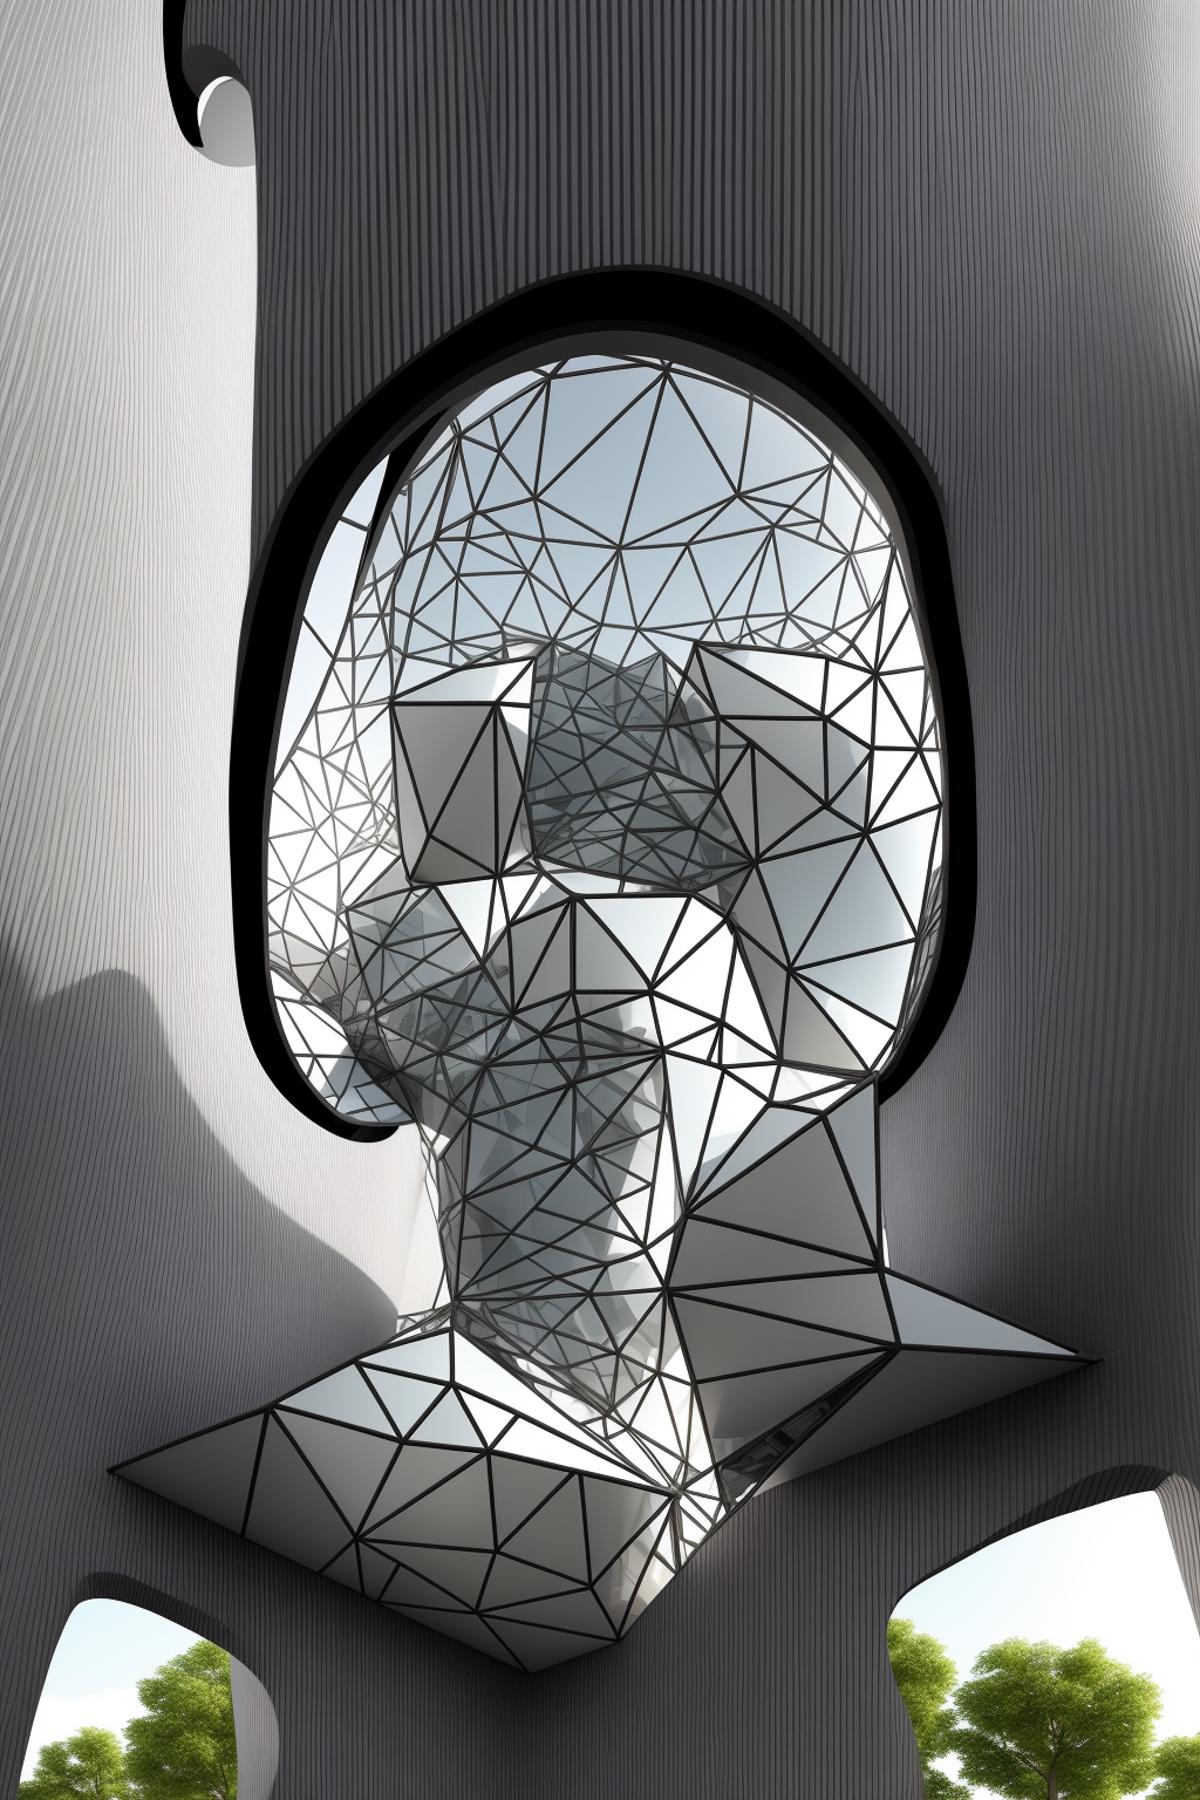 AI model image by Hoang_StablediffusionLife